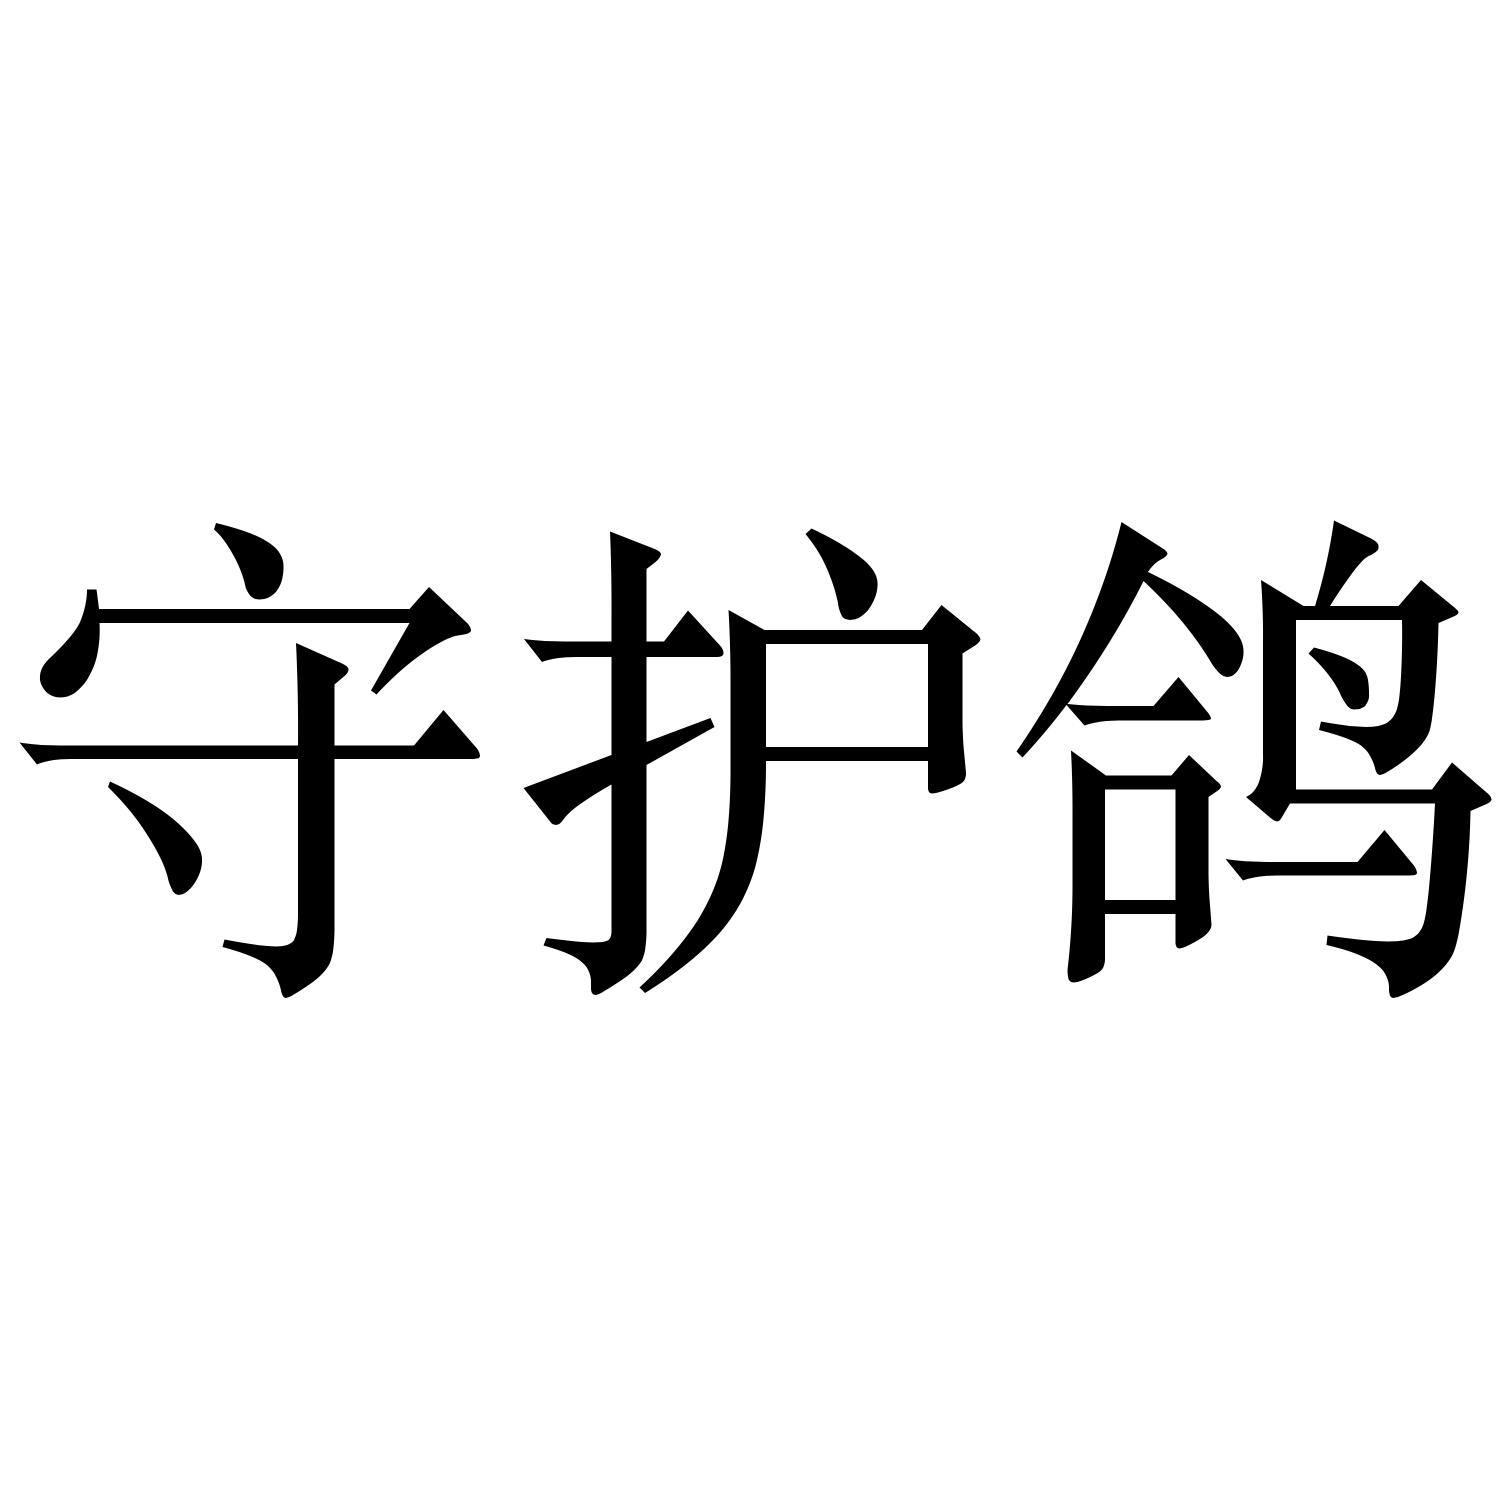 商标文字守护鸽商标注册号 55619381,商标申请人深圳市励拓软件有限